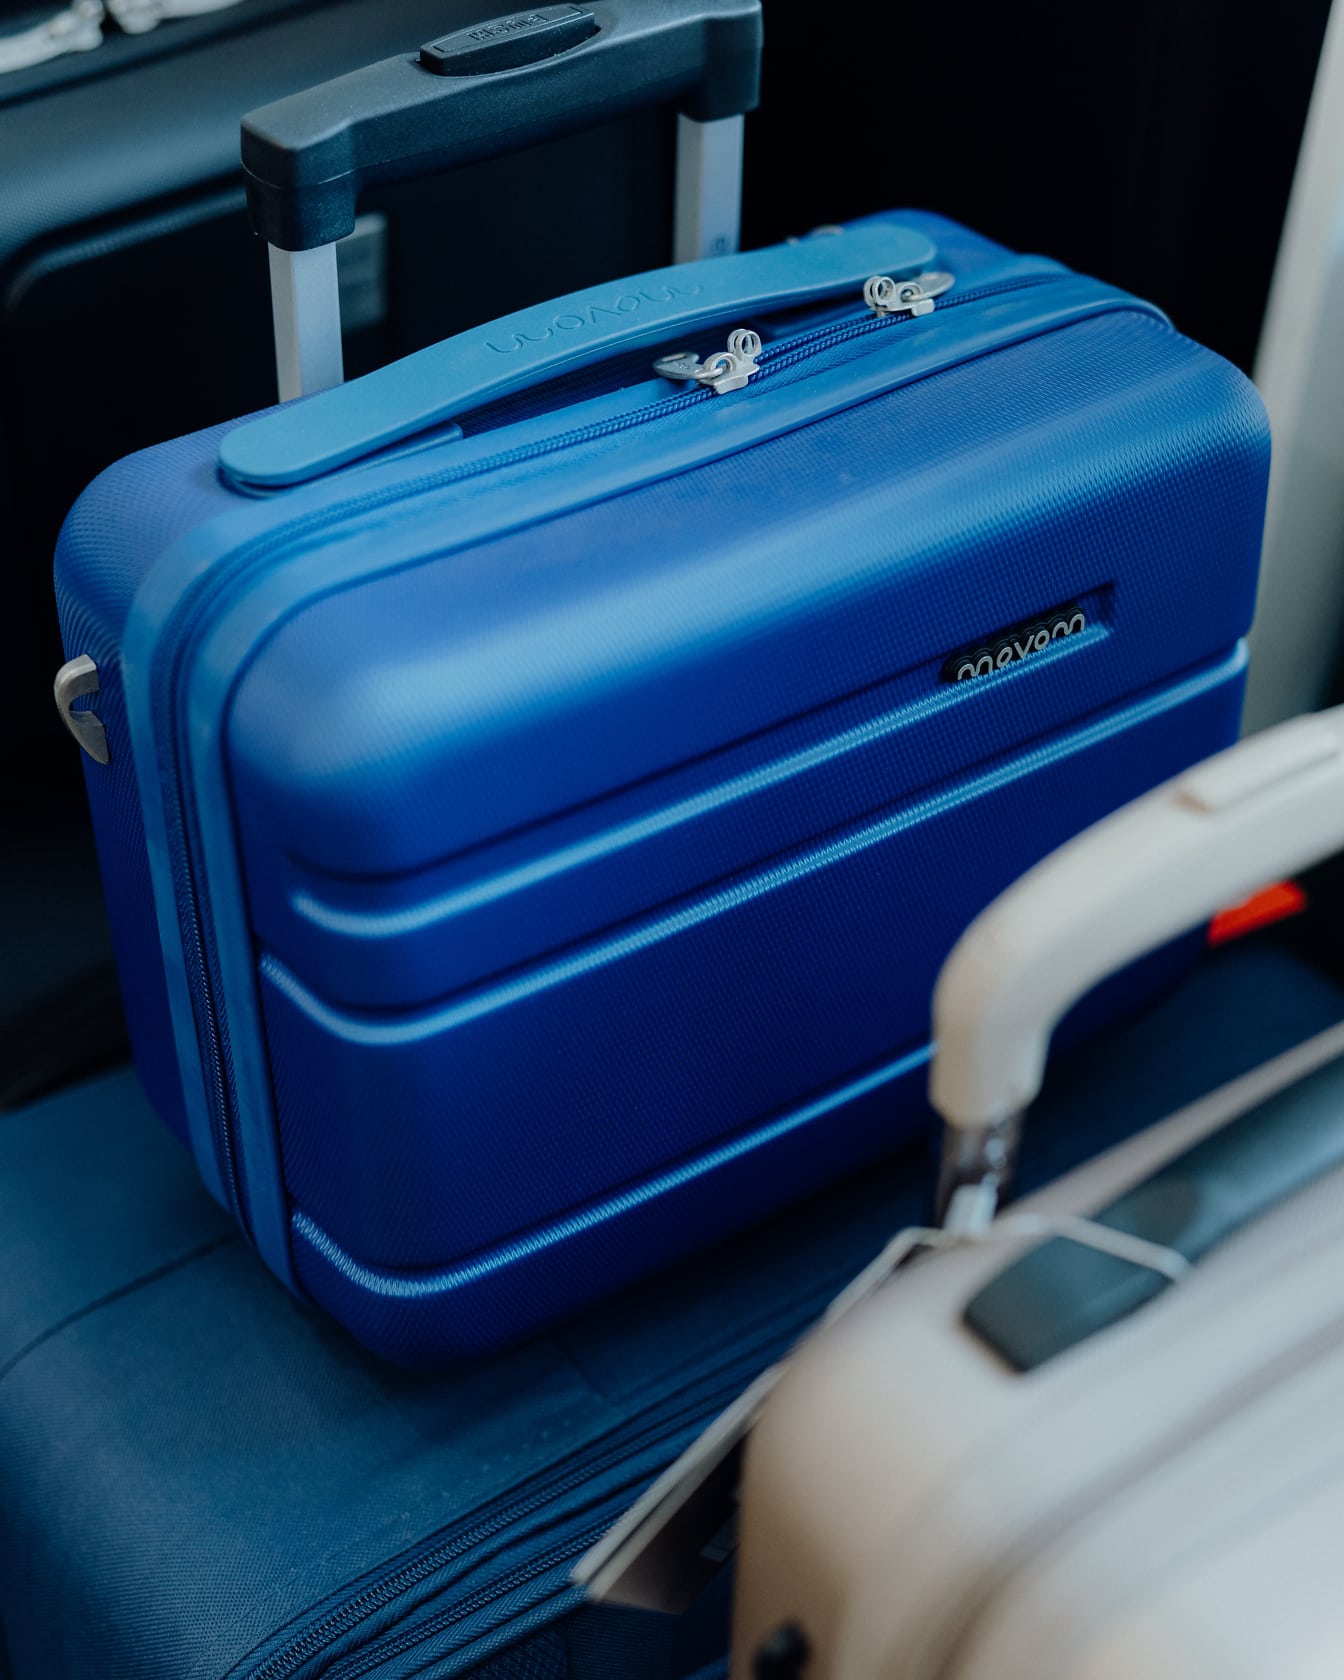 Malý modrý kufor na inom väčšom modrom kufri spolujazdca